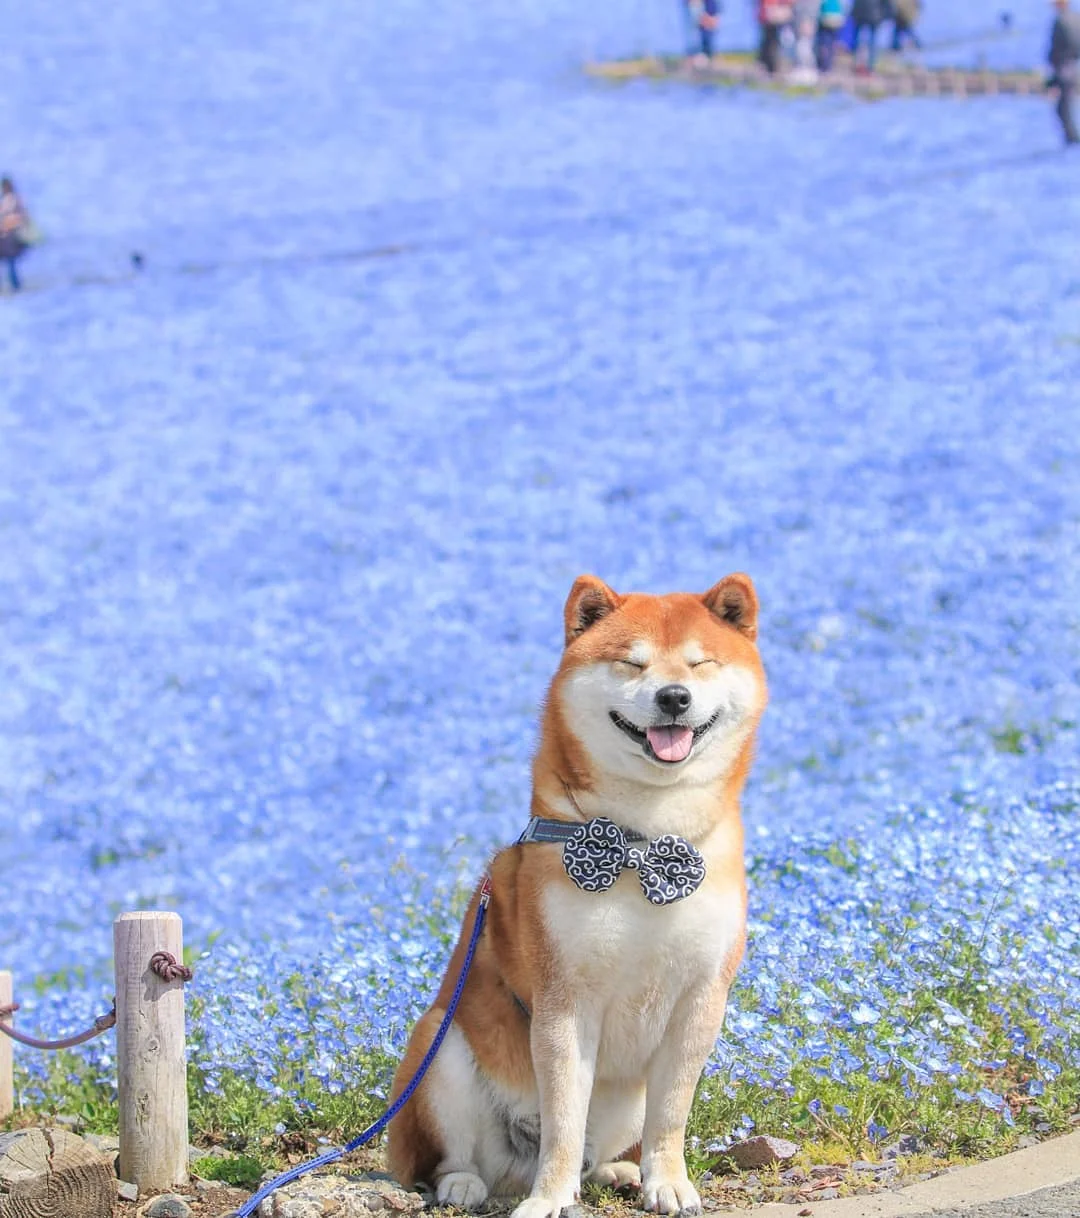 Фото этого улыбающегося пса на фоне цветов делают людей счастливыми, и это правда работает - фото 433958